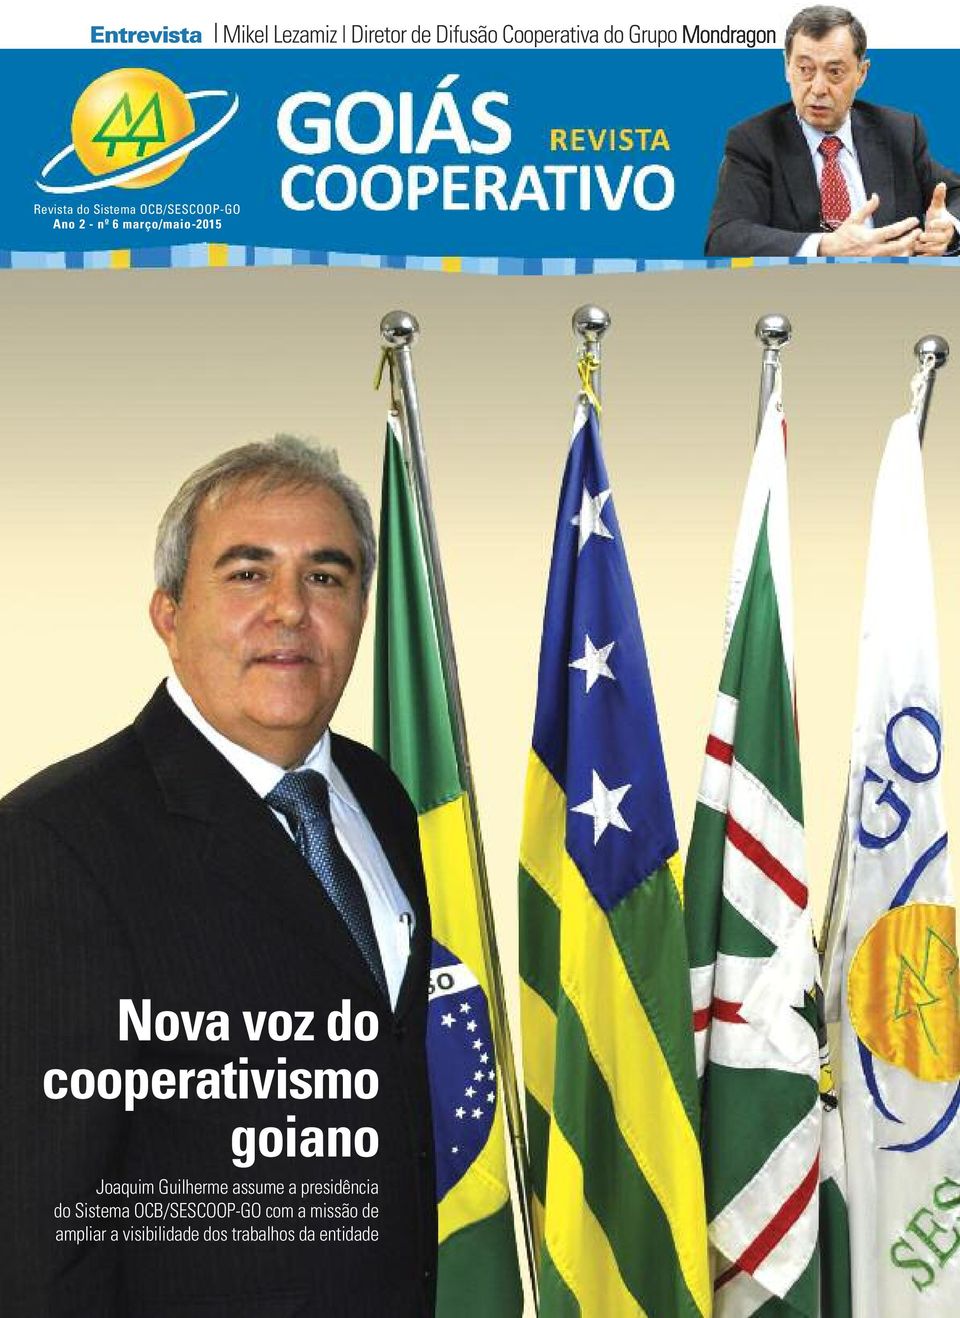 cooperativismo goiano Joaquim Guilherme assume a presidência do Sistema